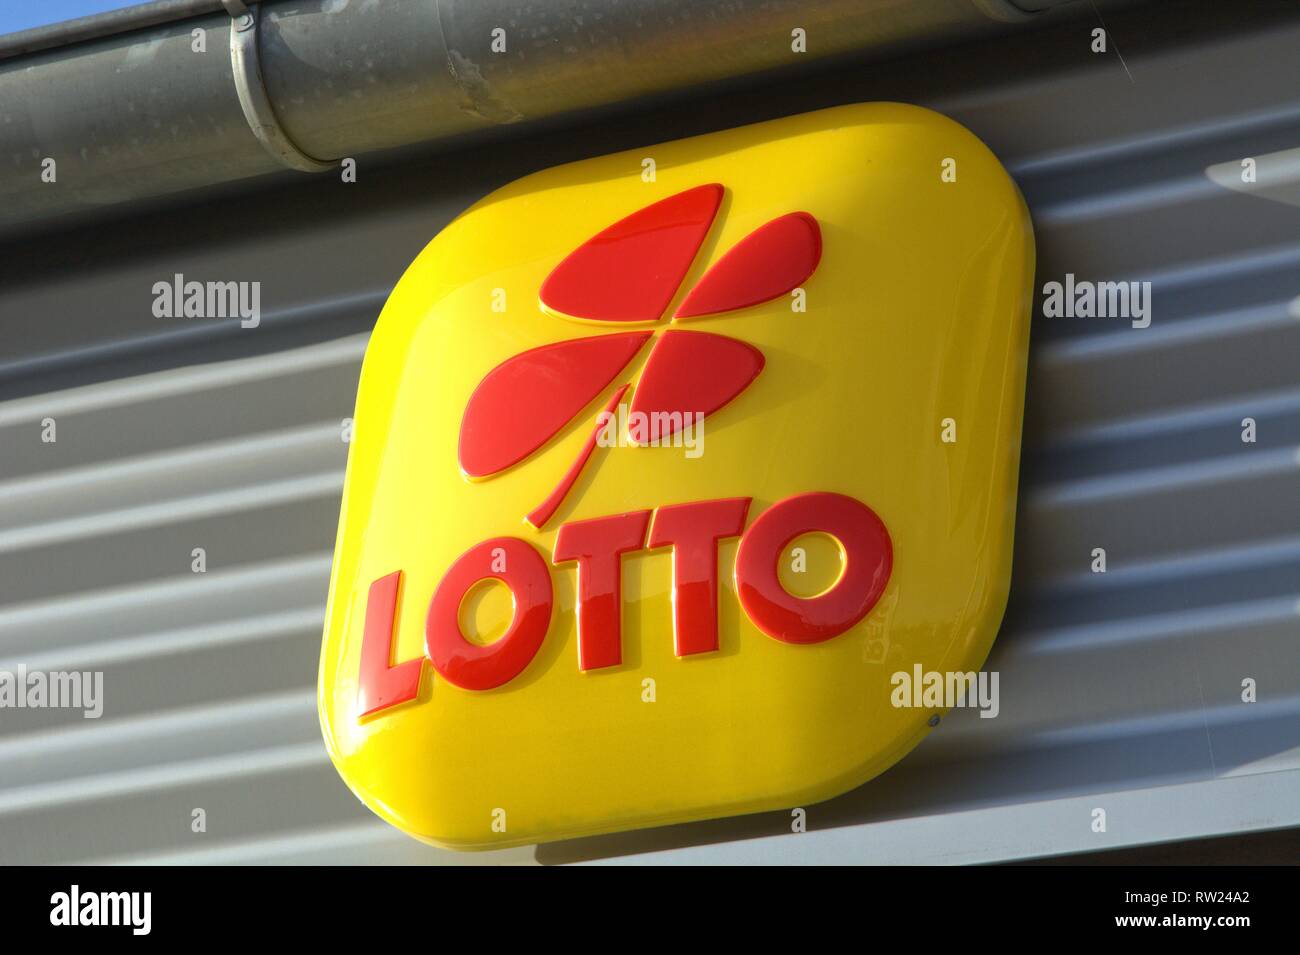 Das gelbe Zeichen einer Lotterie Sammelstelle in Schleswig mit dem roten Glucksklee und der Lotto-Schriftzug. - - - Für die redaktionelle Nutzung nur --- Nur zur redaktionellen Verwendung! | Verwendung weltweit Stockfoto